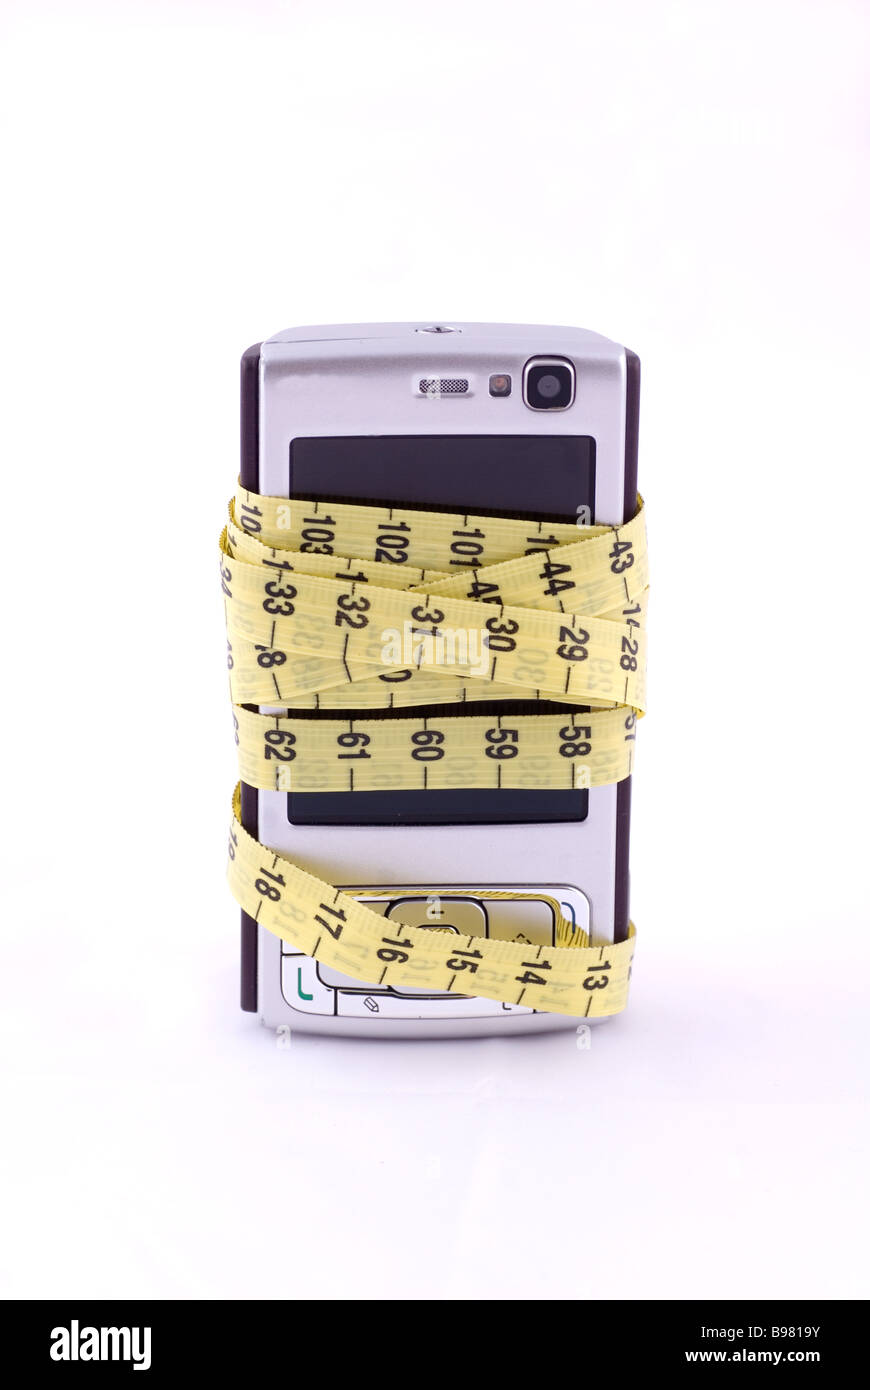 Handy mit Maßband vor einem weißen Hintergrund isoliert verpackt  Stockfotografie - Alamy